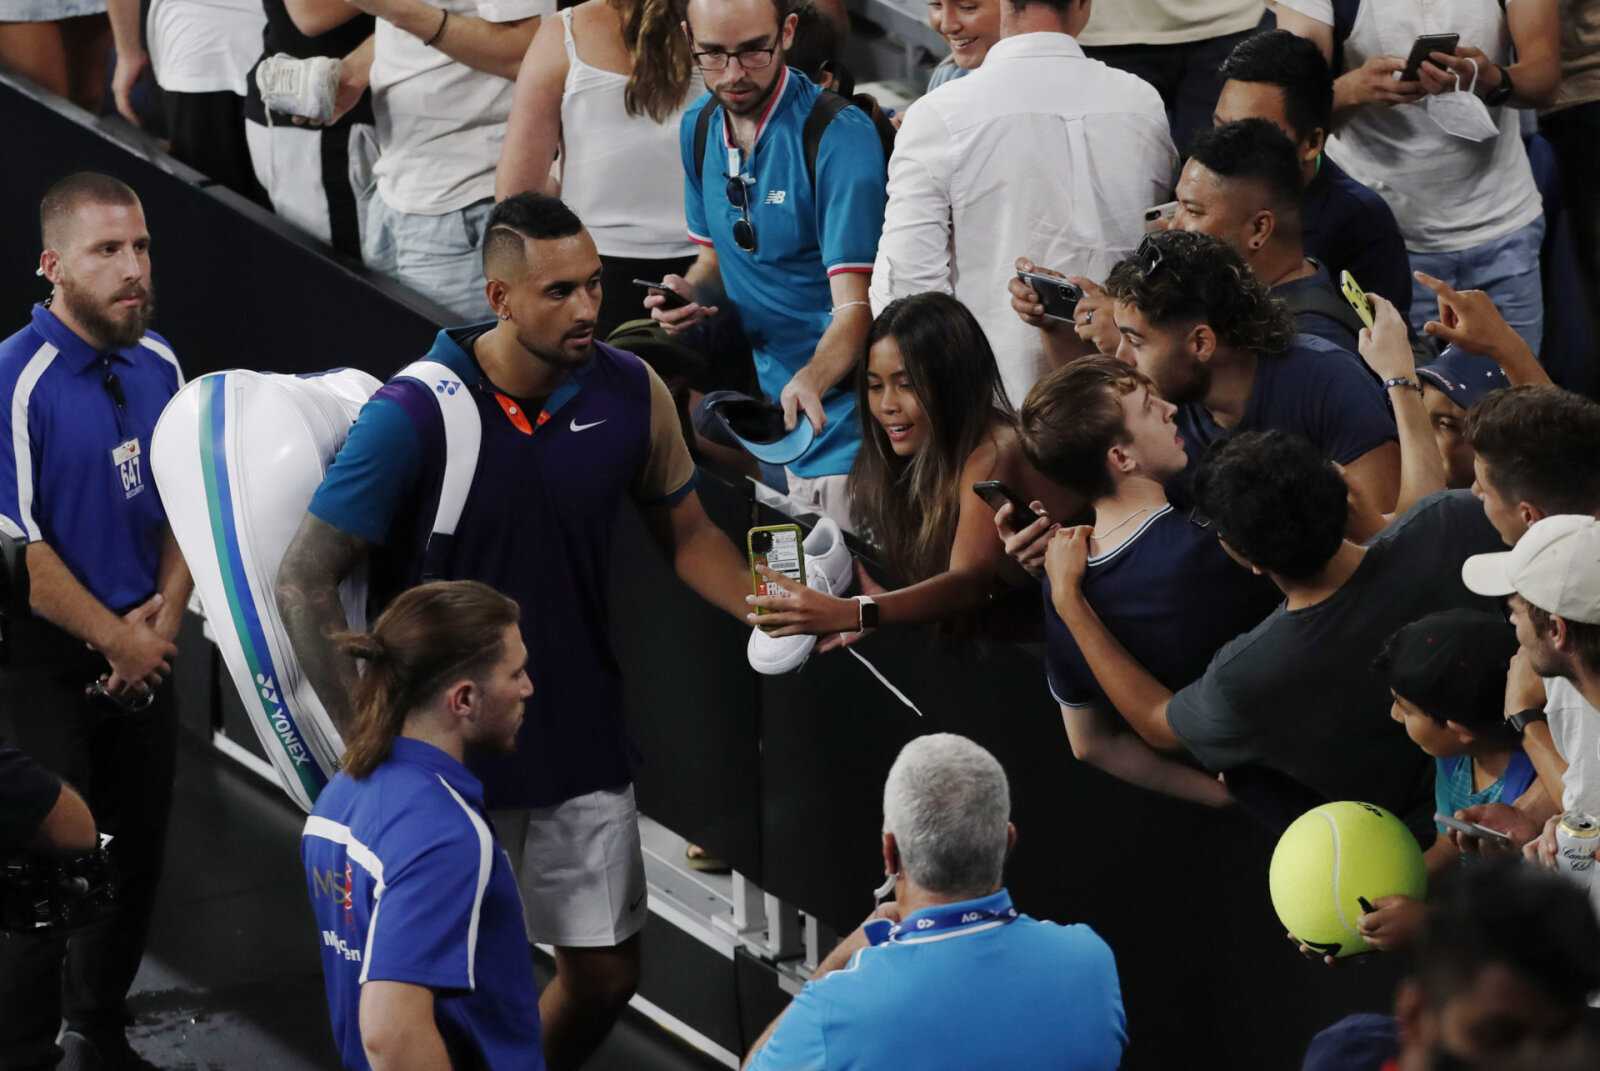 "Ne peut pas servir à 100%": Nick Kyrgios retarde le retour sur gazon, soulève des doutes sur les championnats de Wimbledon 2021